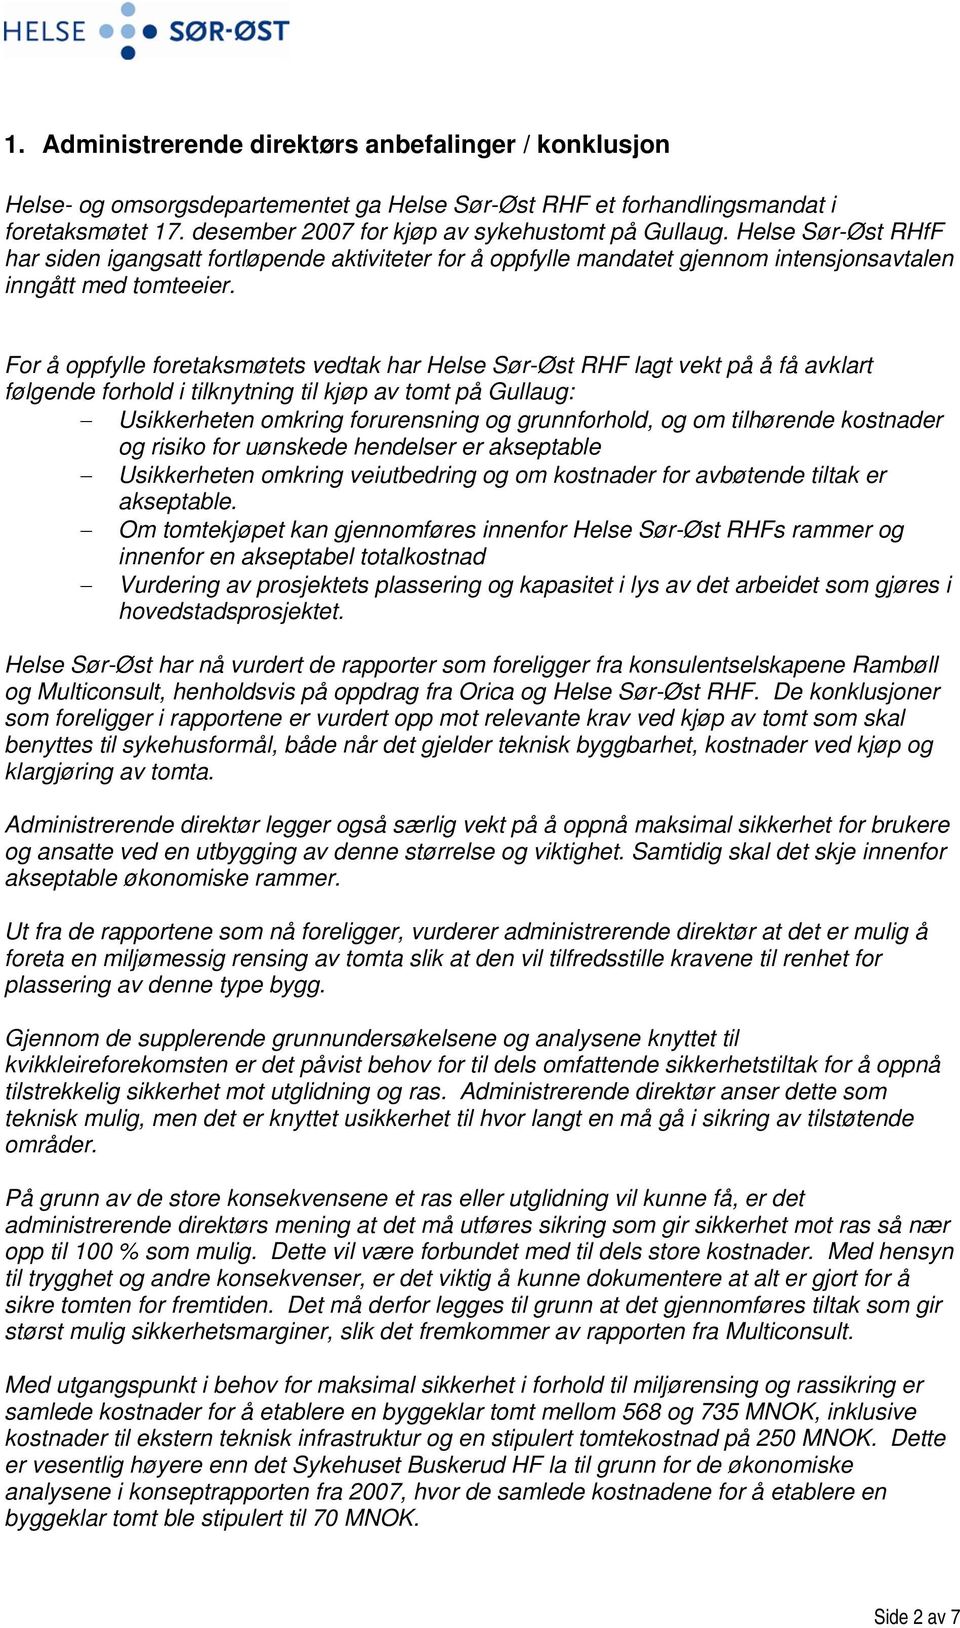 For å oppfylle foretaksmøtets vedtak har Helse Sør-Øst RHF lagt vekt på å få avklart følgende forhold i tilknytning til kjøp av tomt på Gullaug: Usikkerheten omkring forurensning og grunnforhold, og